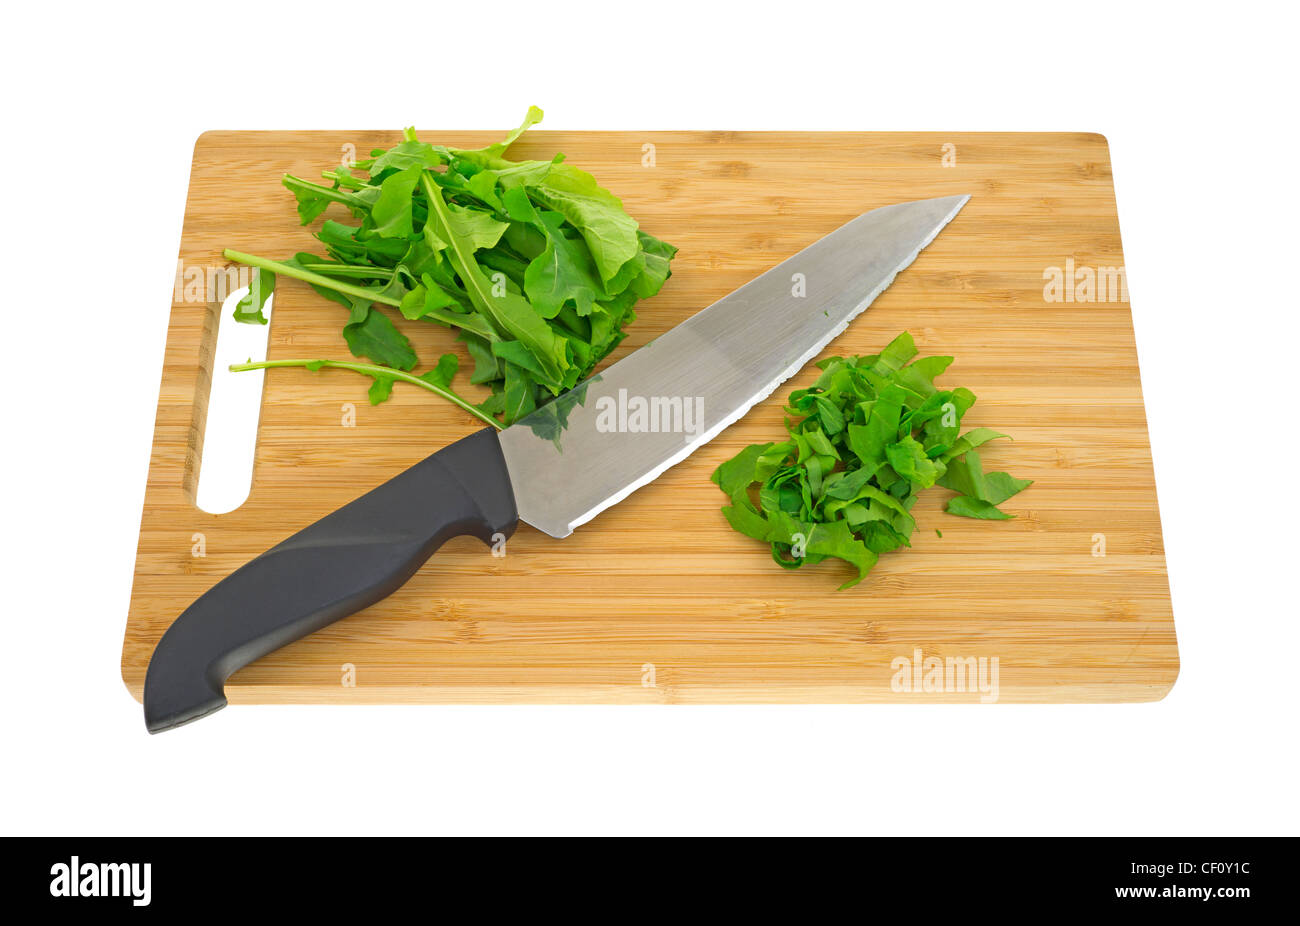 Chopped arugula on cutting board Stock Photo